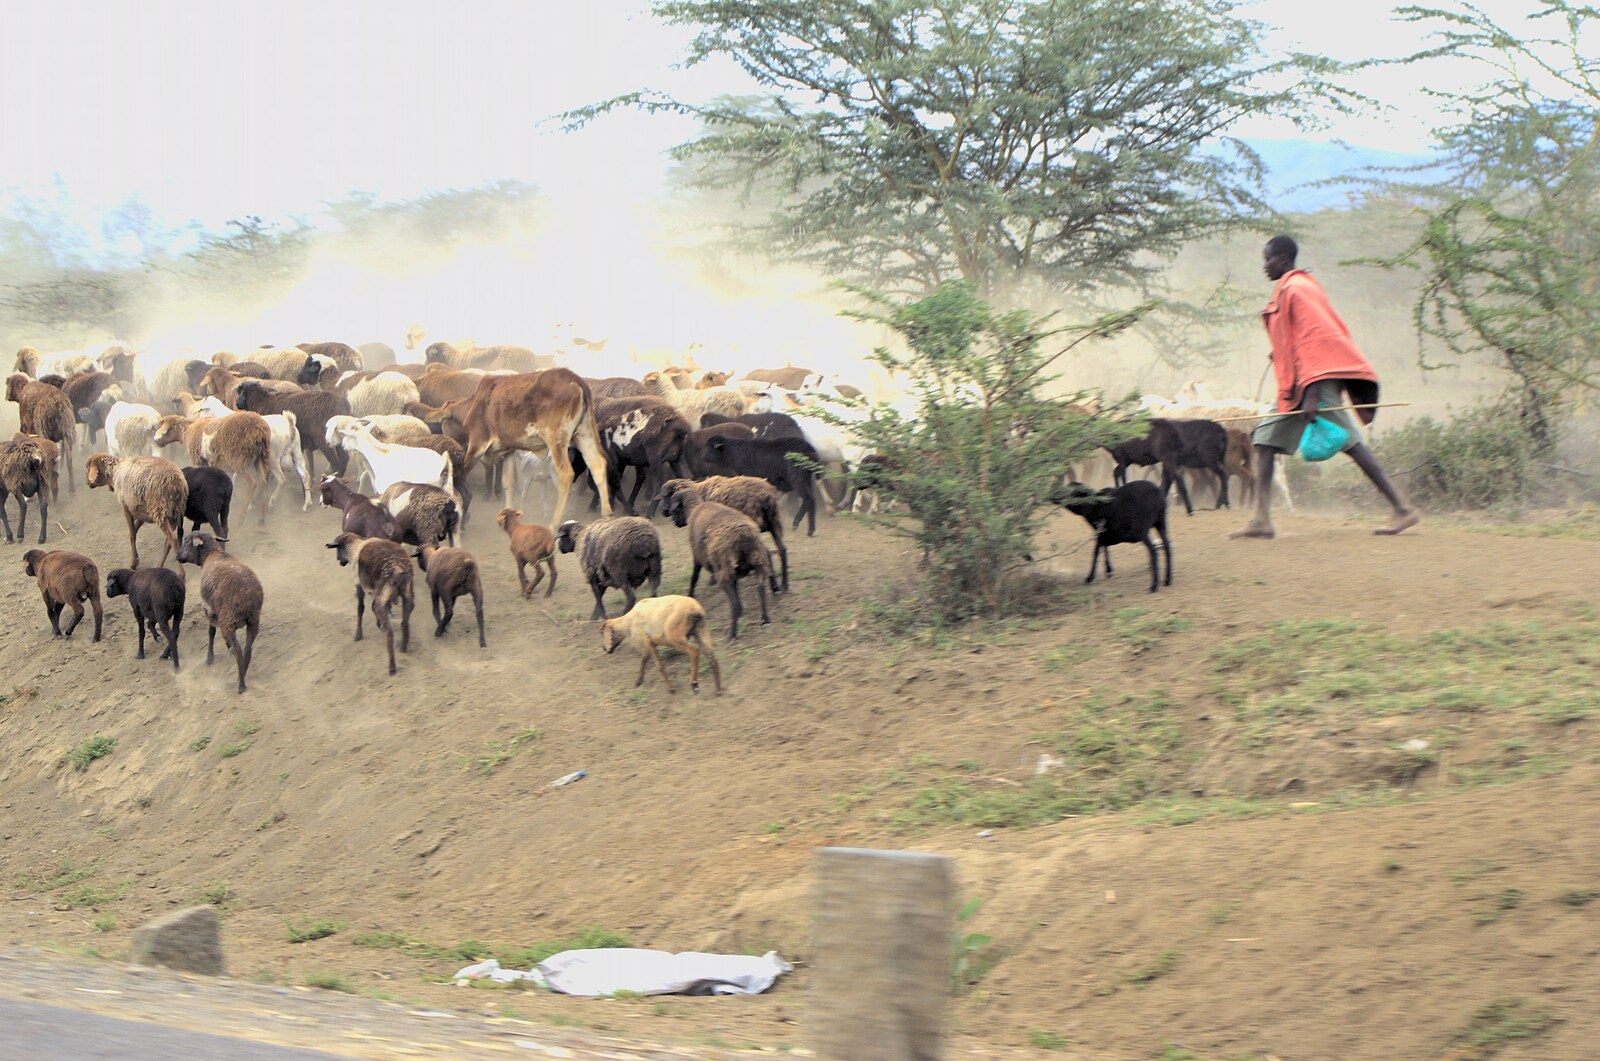 A Maasai herds cows and goats from Nairobi and the Road to Maasai Mara, Kenya, Africa - 1st November 2010